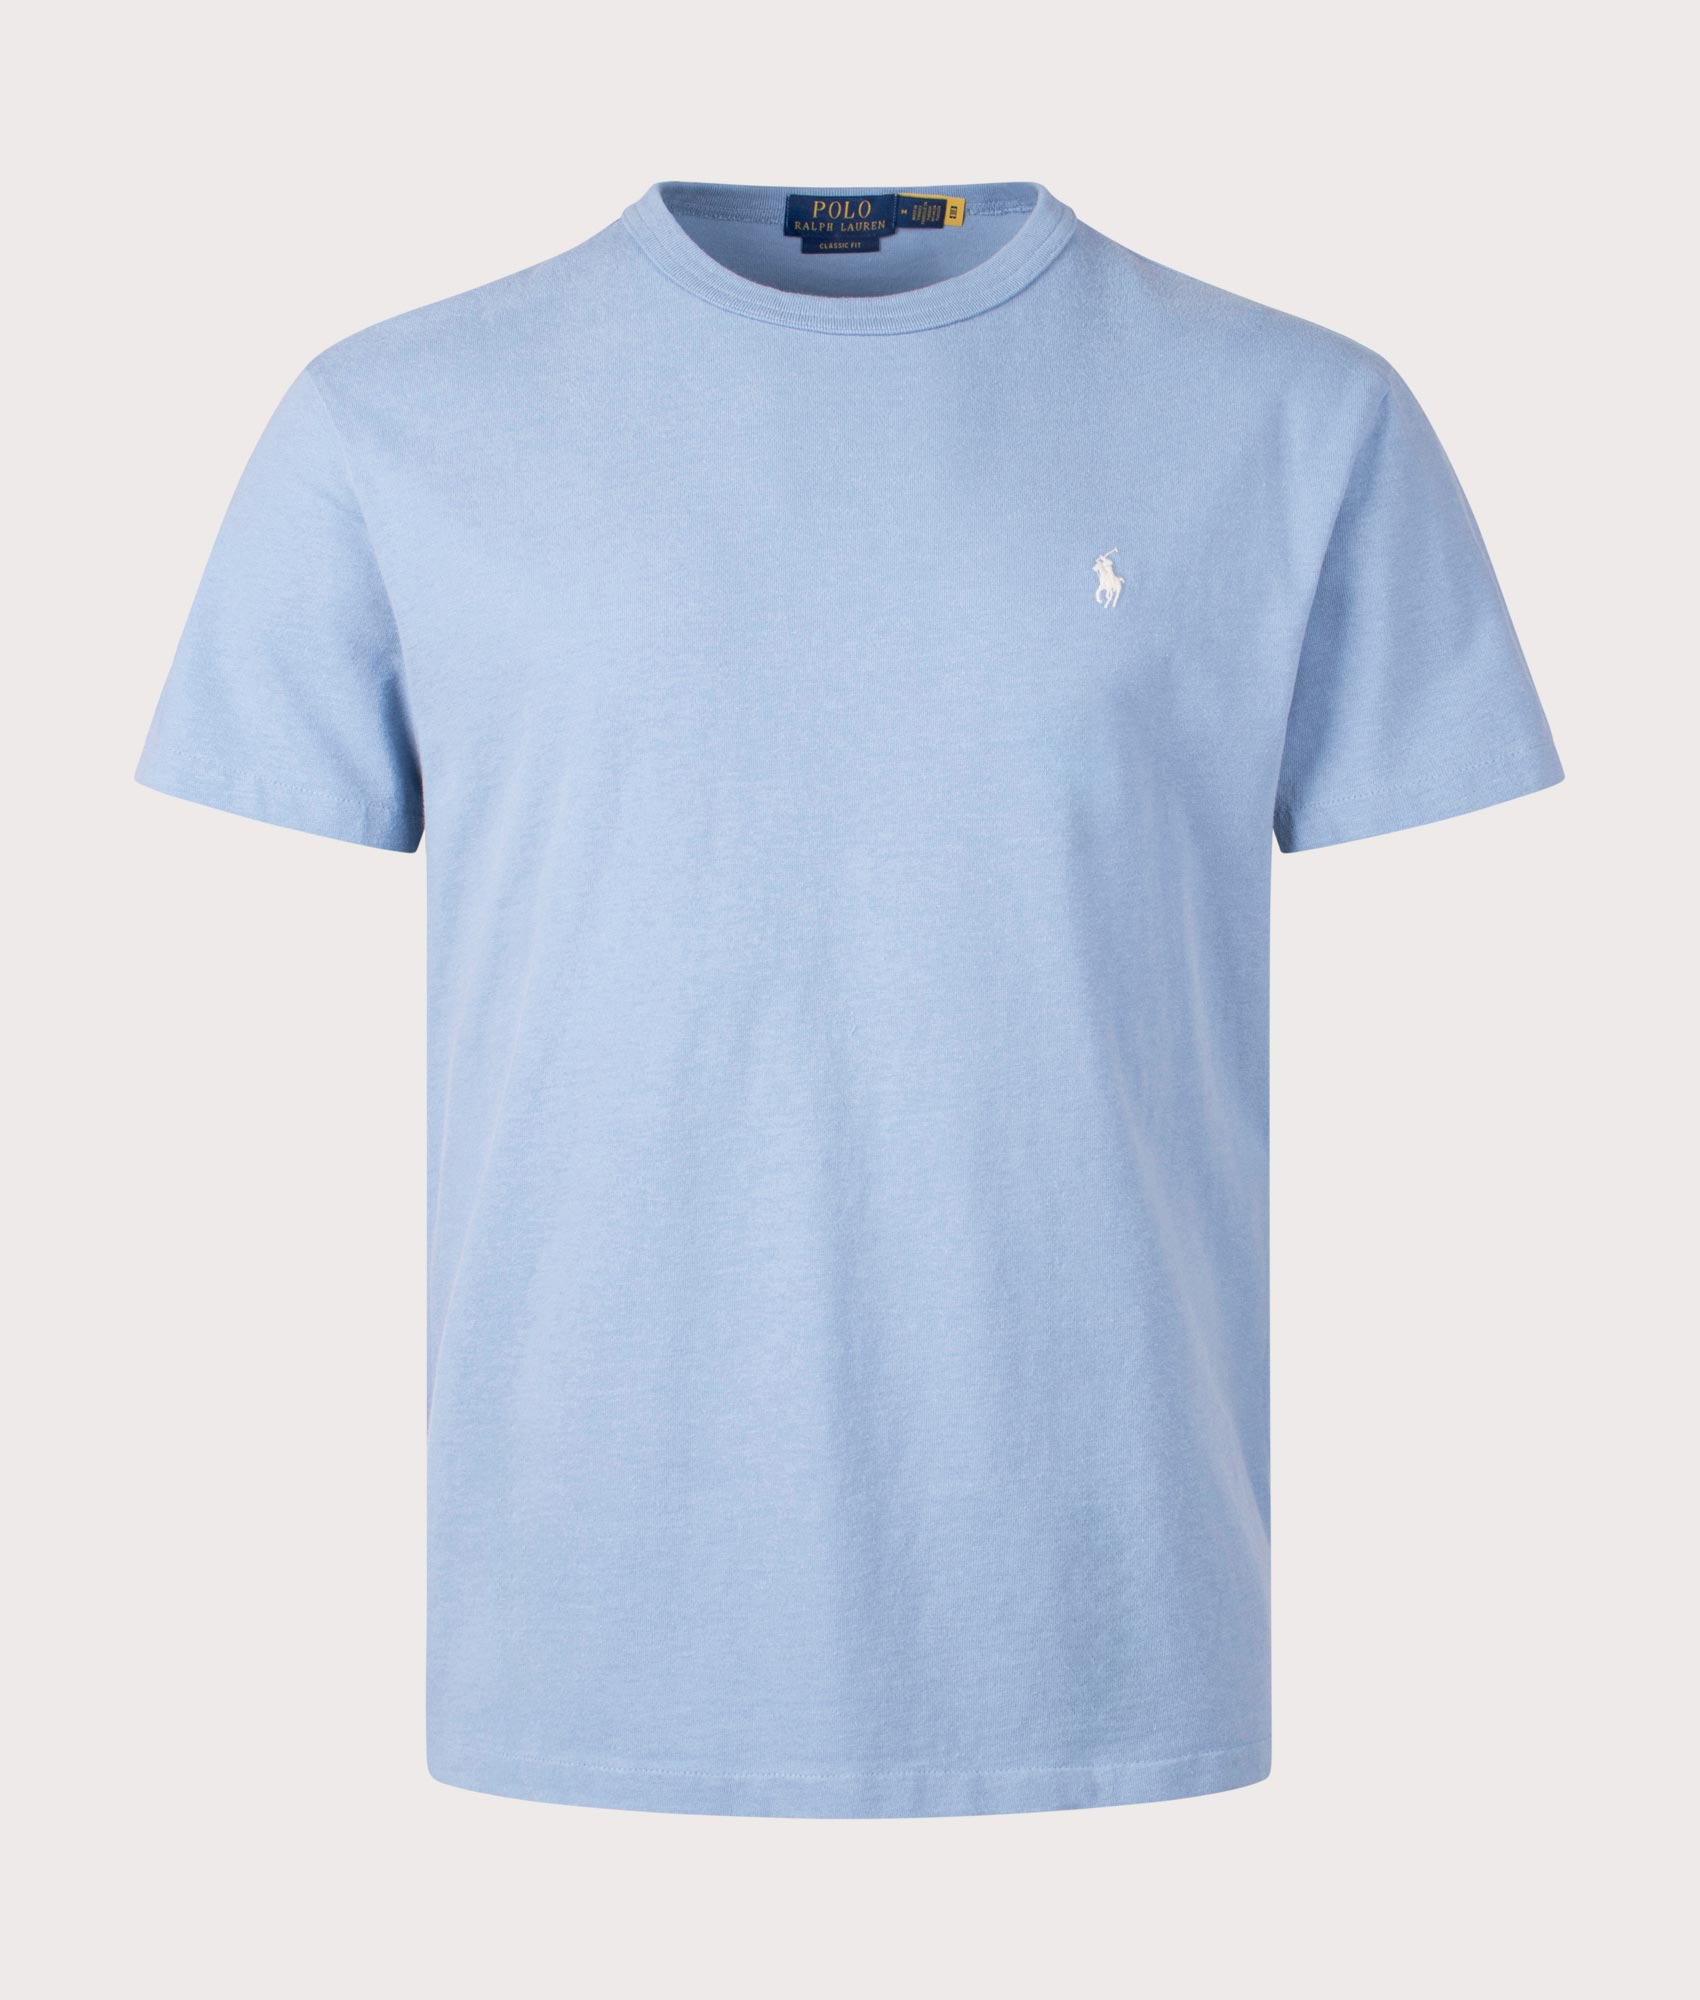 Polo Ralph Lauren Mens Classic Fit Jersey T-Shirt - Colour: 014 Channel Blue - Size: Large